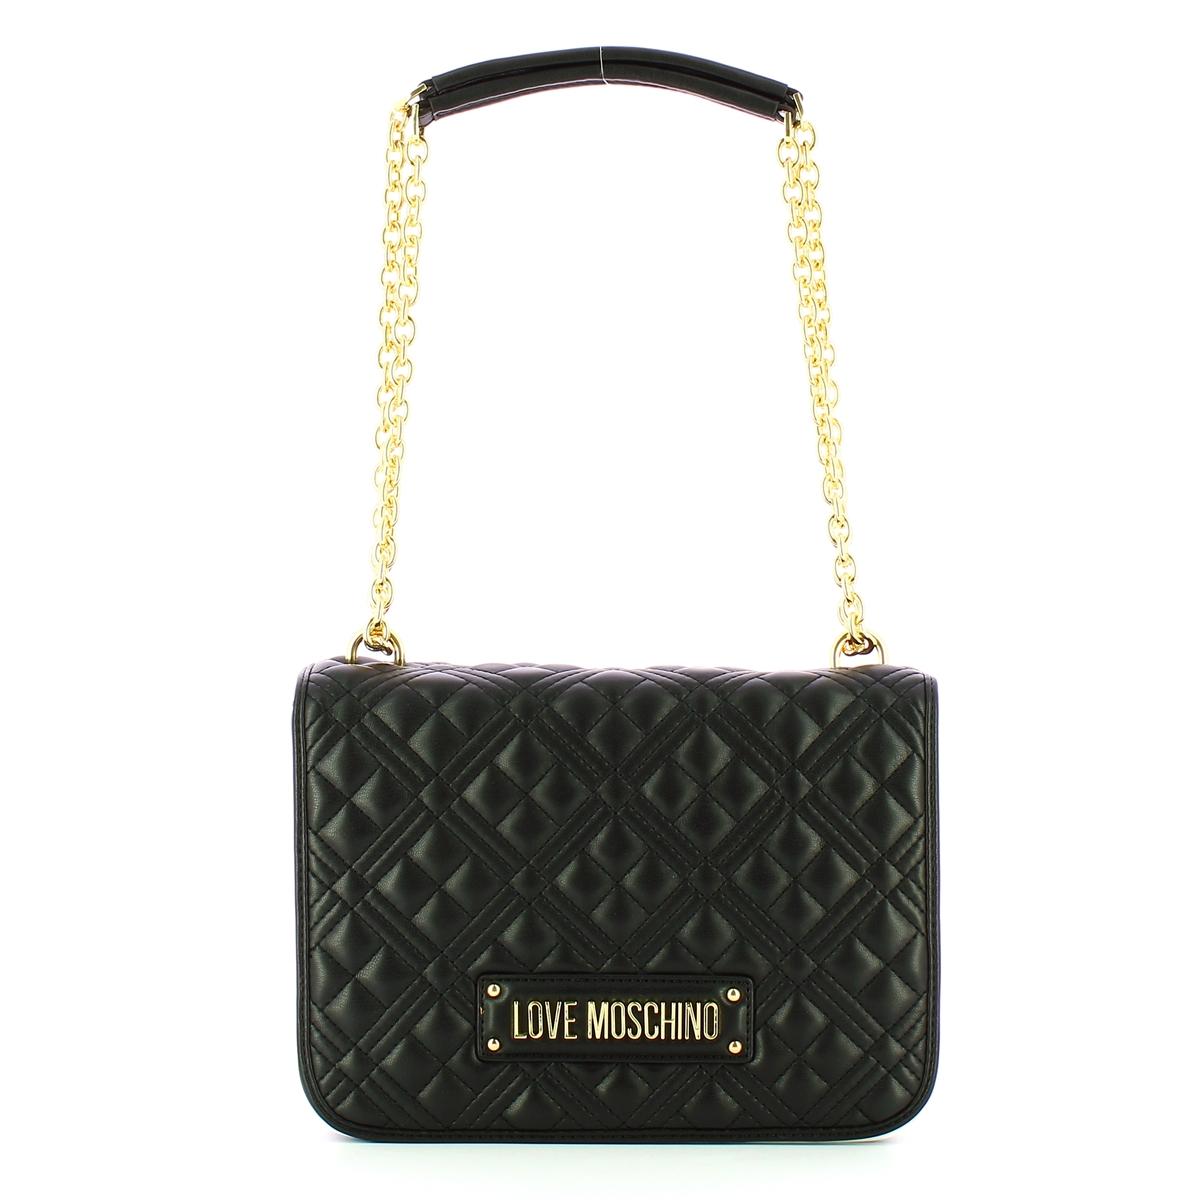 Love Moschino Women's Black Bag